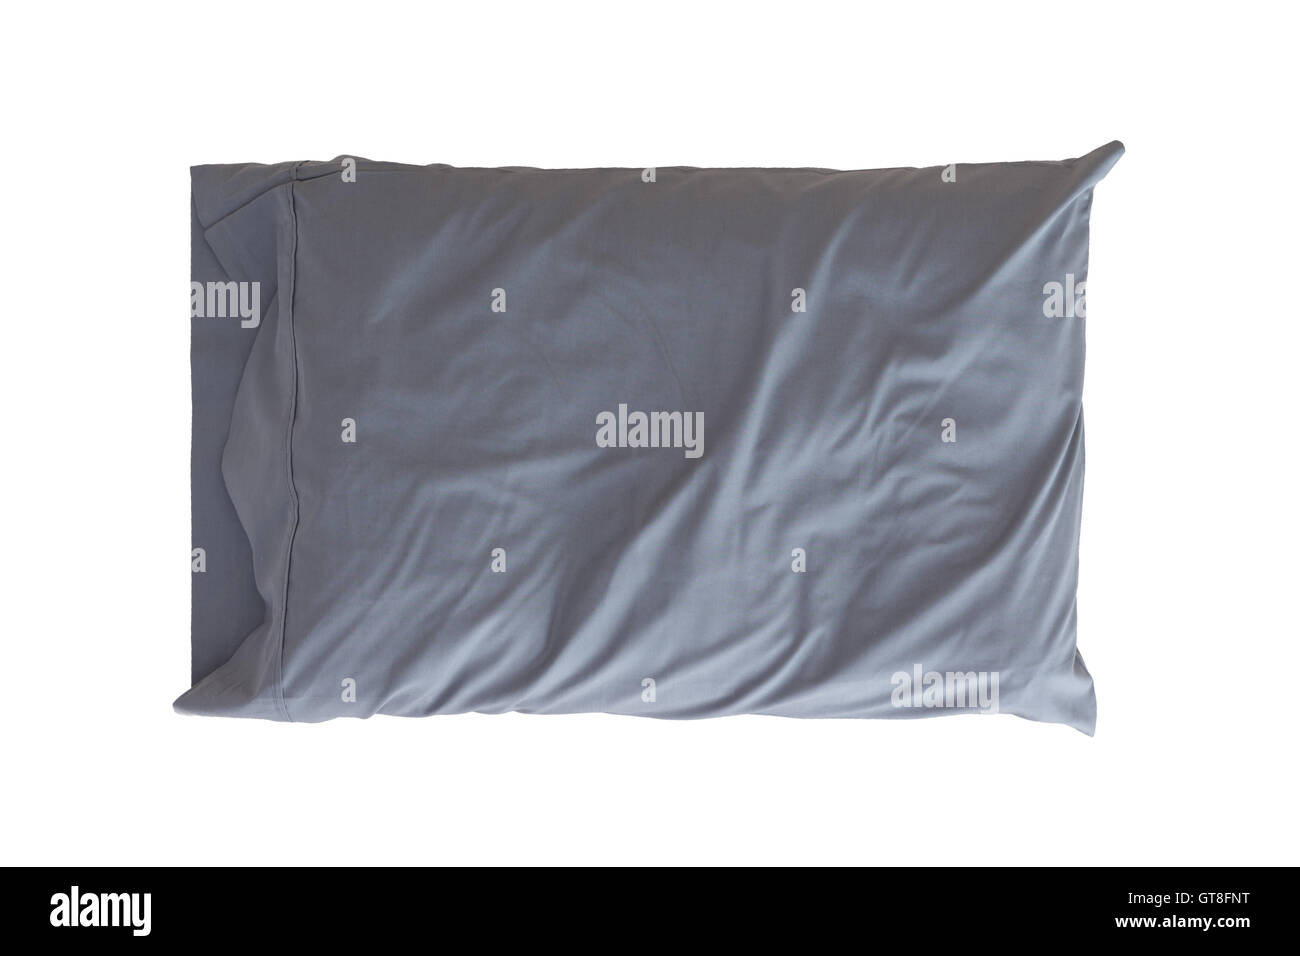 Cómoda almohada suave en un almohadón gris arrugado para la protección e higiene aislado en blanco Foto de stock